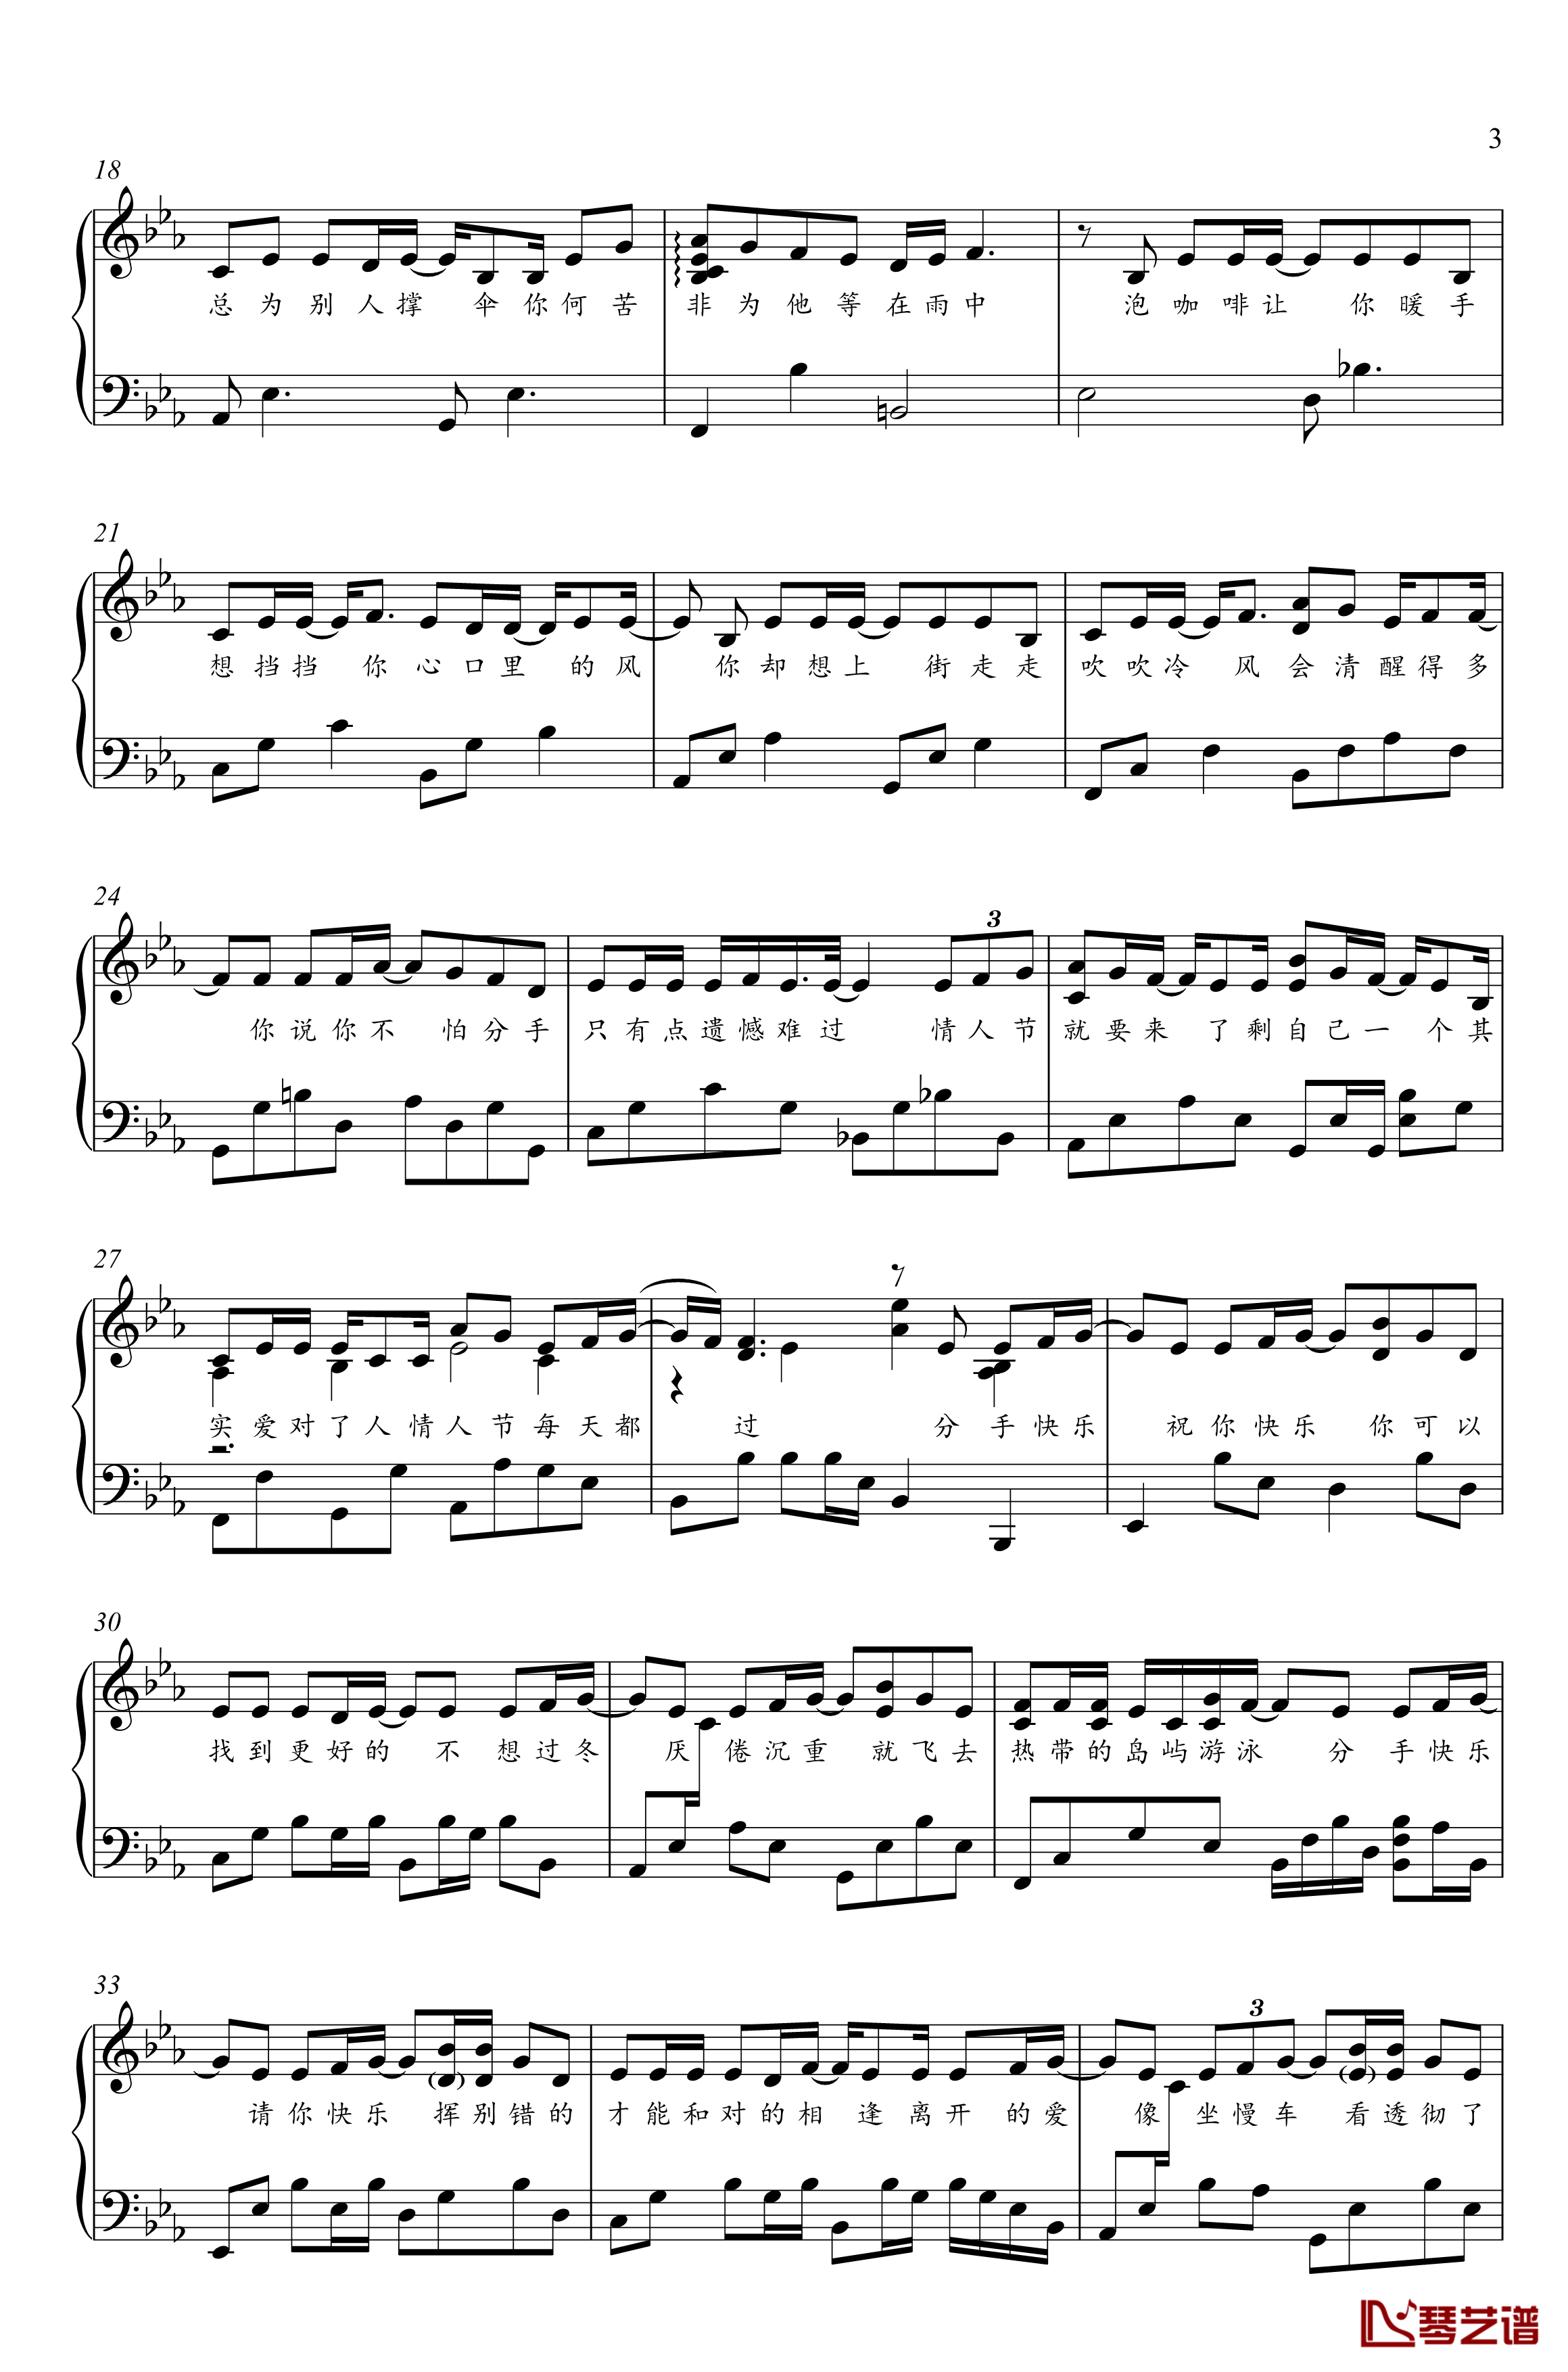 分手快乐钢琴谱-独奏谱-梁静茹-金老师钢琴1910313